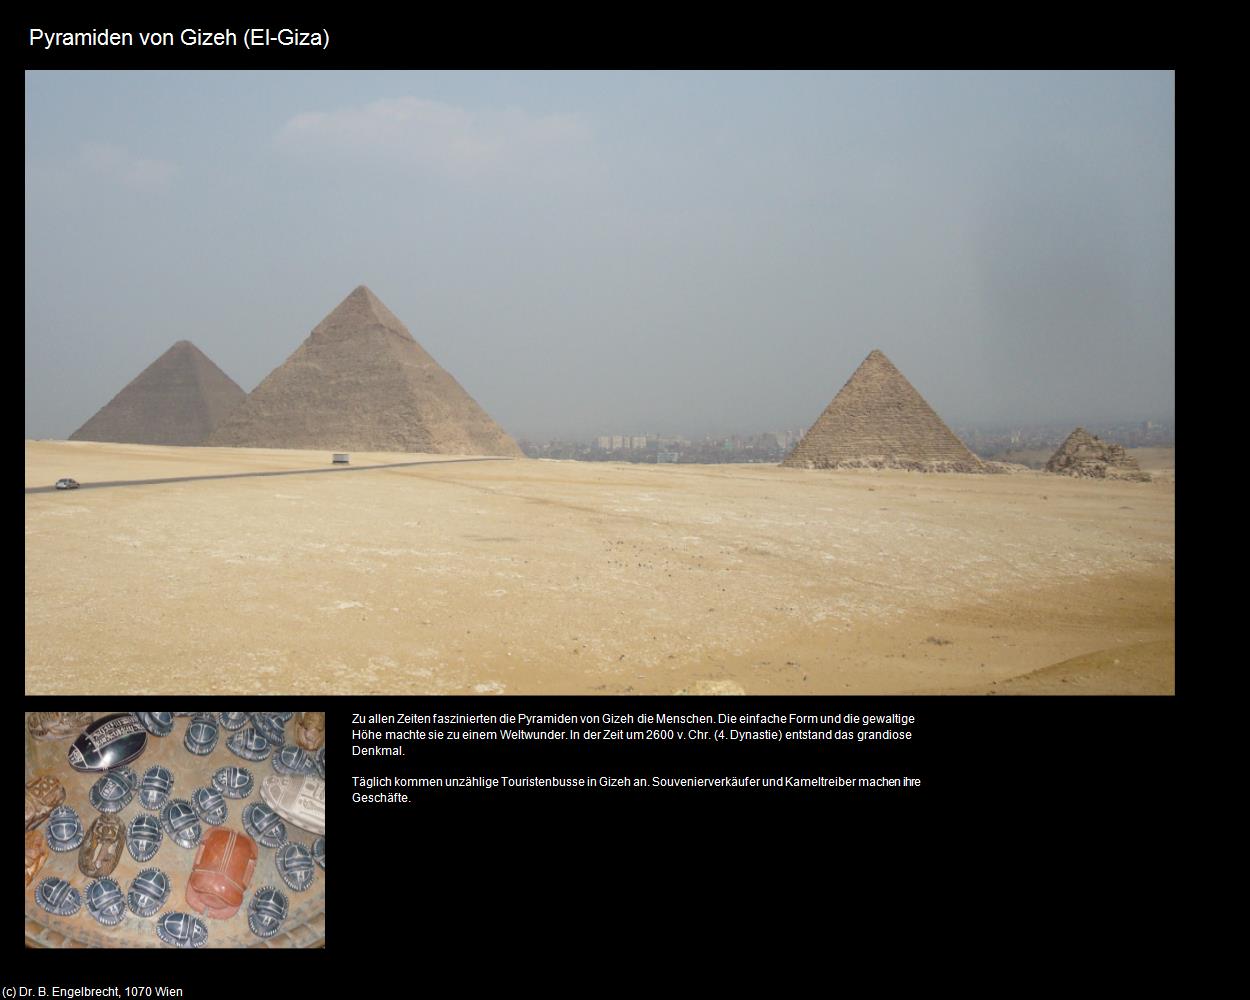 Pyramiden von Gizeh (El-Giza, Nil-Tal) in Kulturatlas-ÄGYPTEN